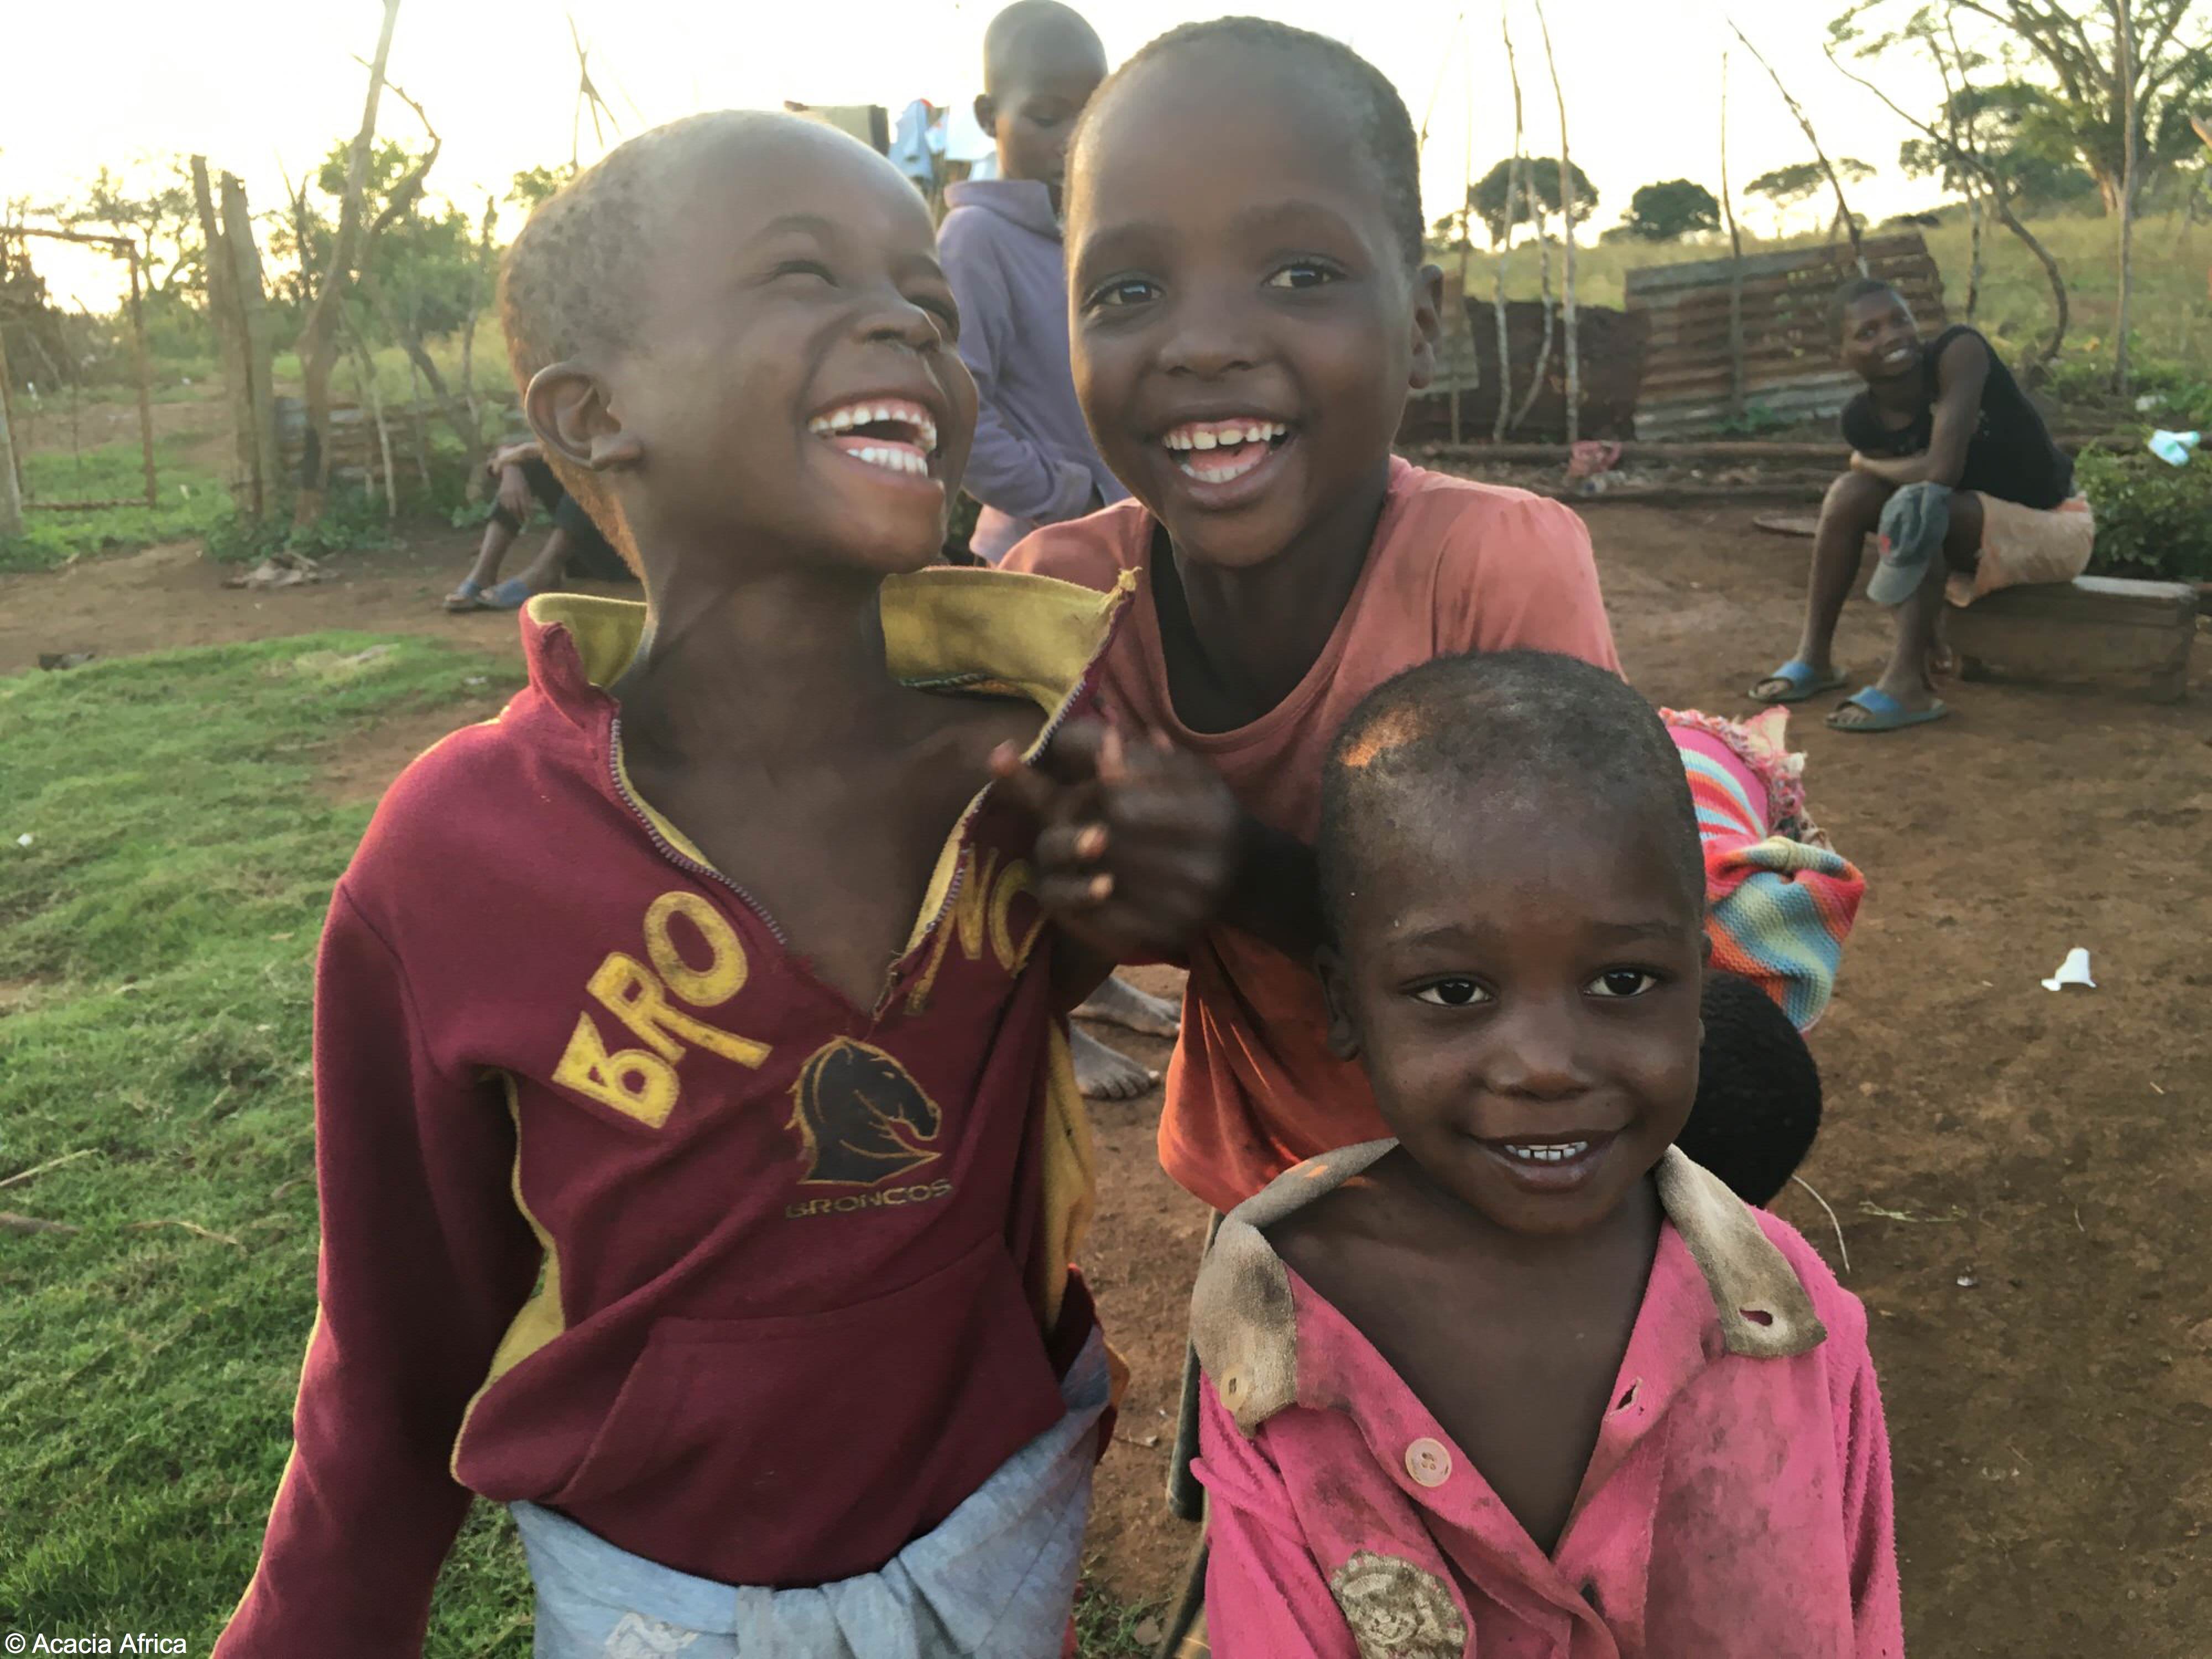 Village children in Swaziland, Africa